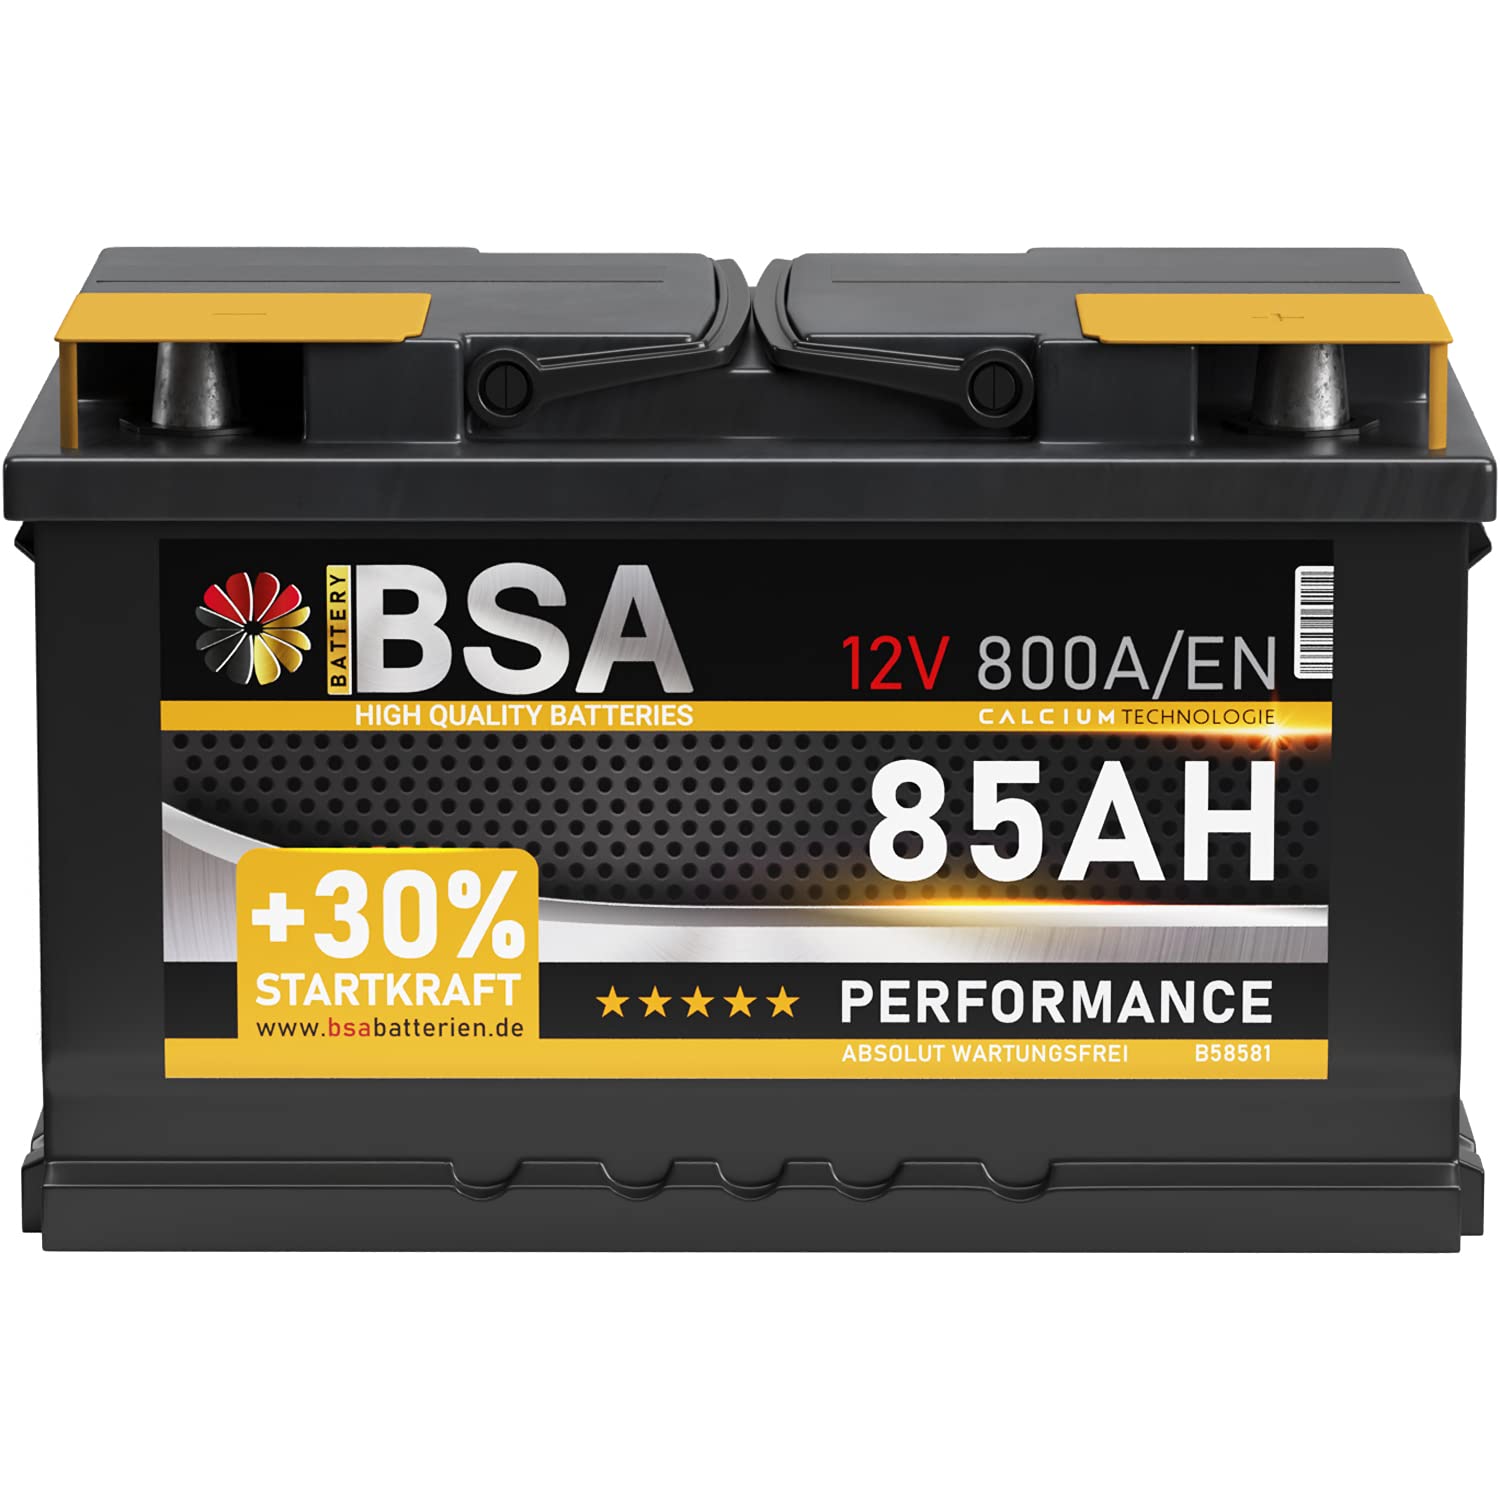 BSA Autobatterie 85Ah 12V Batterie 800A/EN +30% Startleistung ersetzt 74Ah 75Ah 77Ah 80Ah 82Ah 83Ah von BSA BATTERY HIGH QUALITY BATTERIES